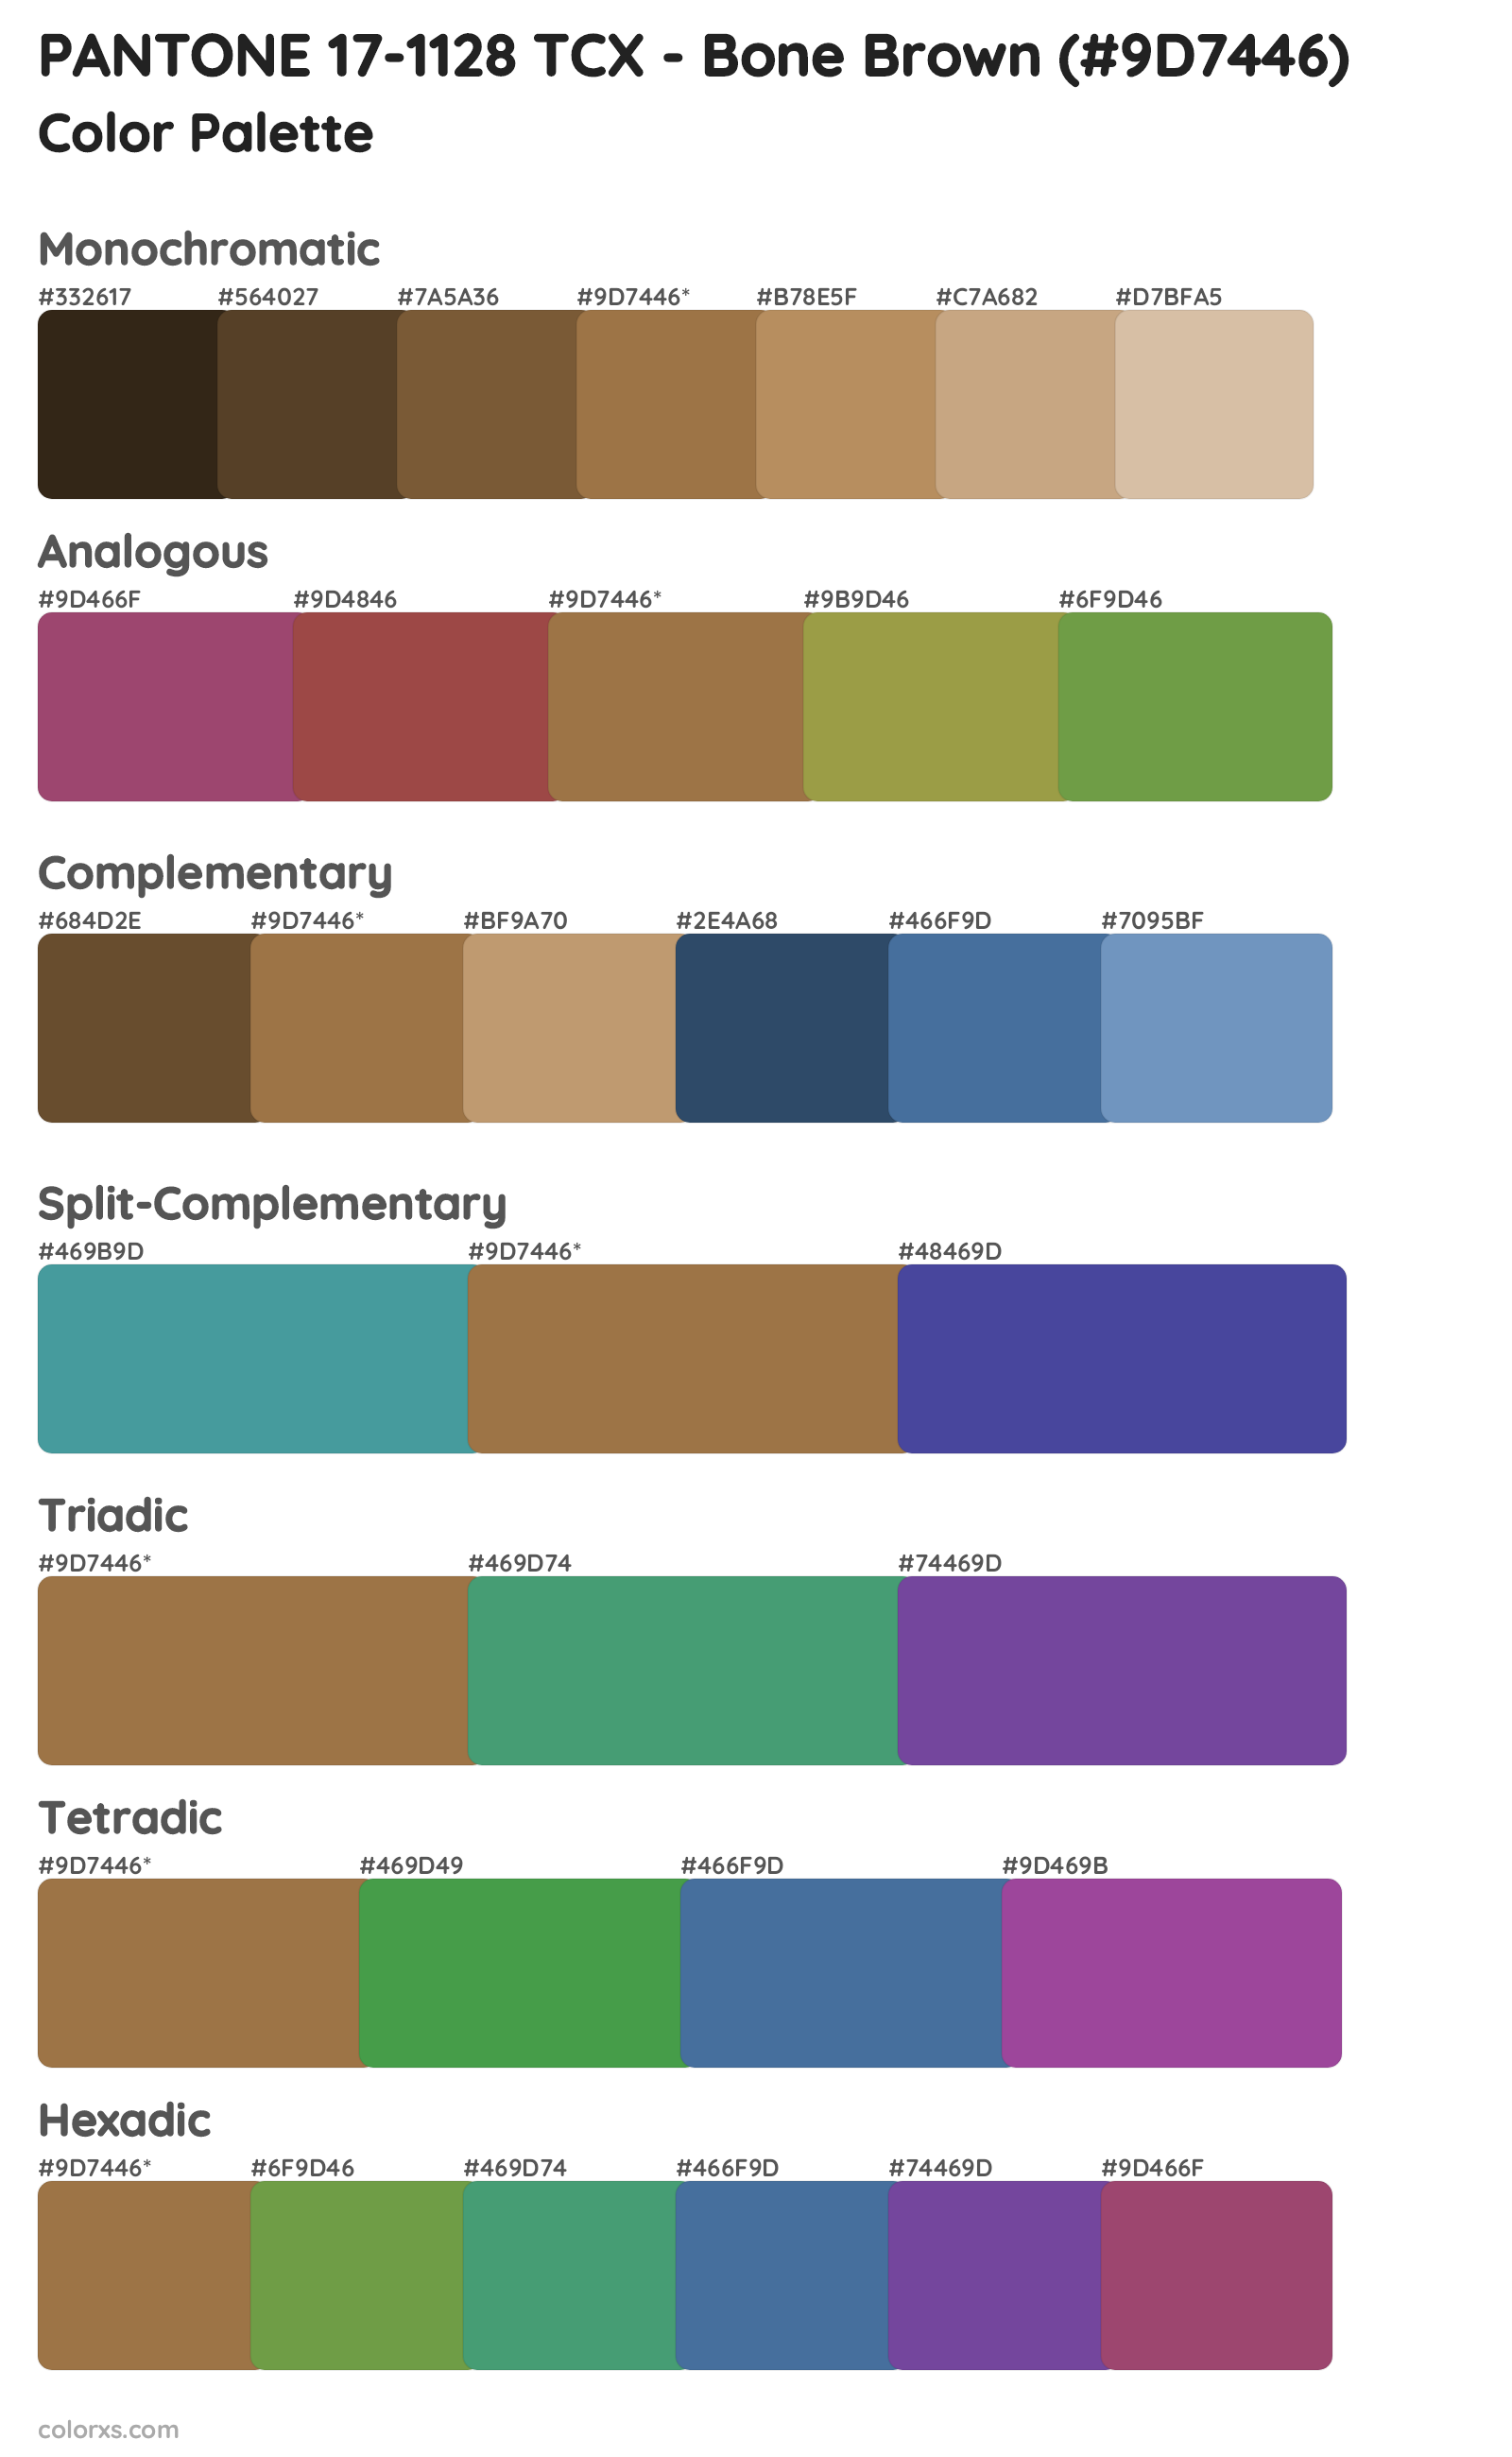 PANTONE 17-1128 TCX - Bone Brown Color Scheme Palettes